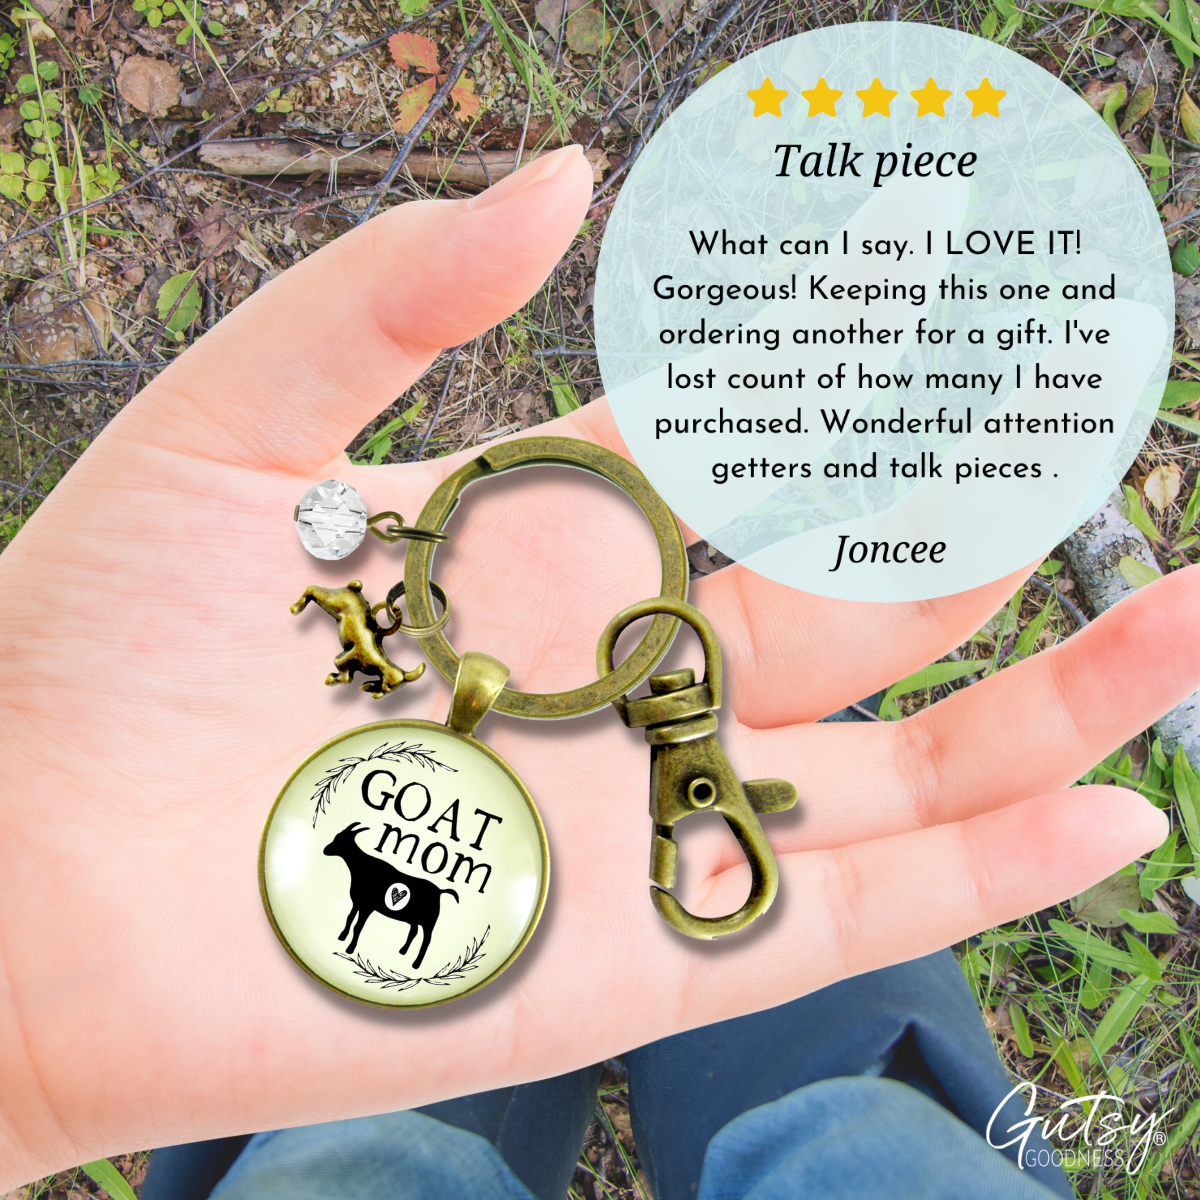 Goat Mom Keychain Baby Farm Animal Jewelry for Mama Charm Gift  Keychain - Women - Gutsy Goodness Handmade Jewelry